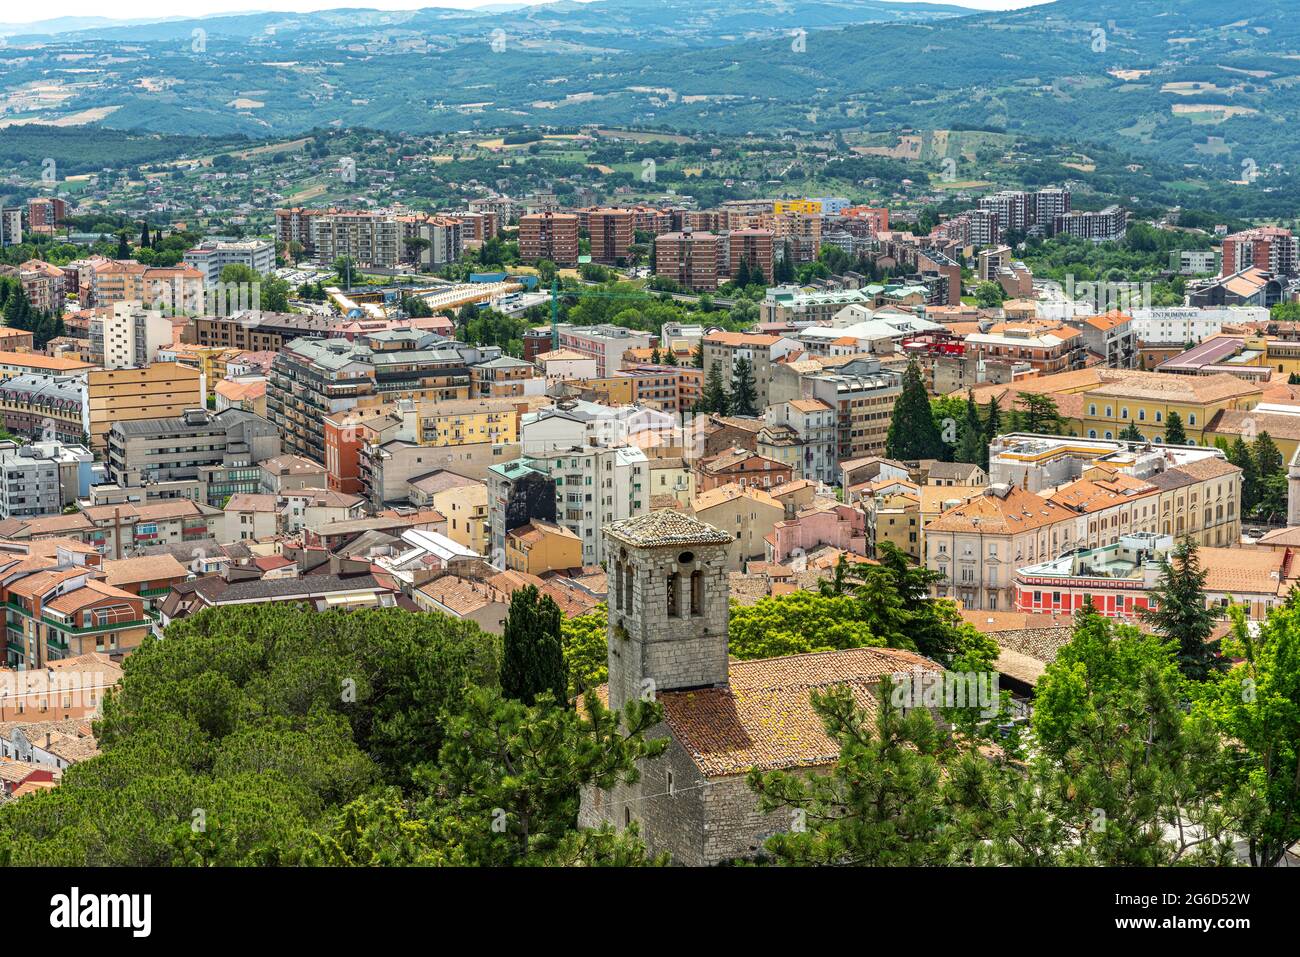 Vue de dessus de la ville de Campobasso, la capitale provinciale de Molise. Campobasso, Molise, Italie, Europe Banque D'Images